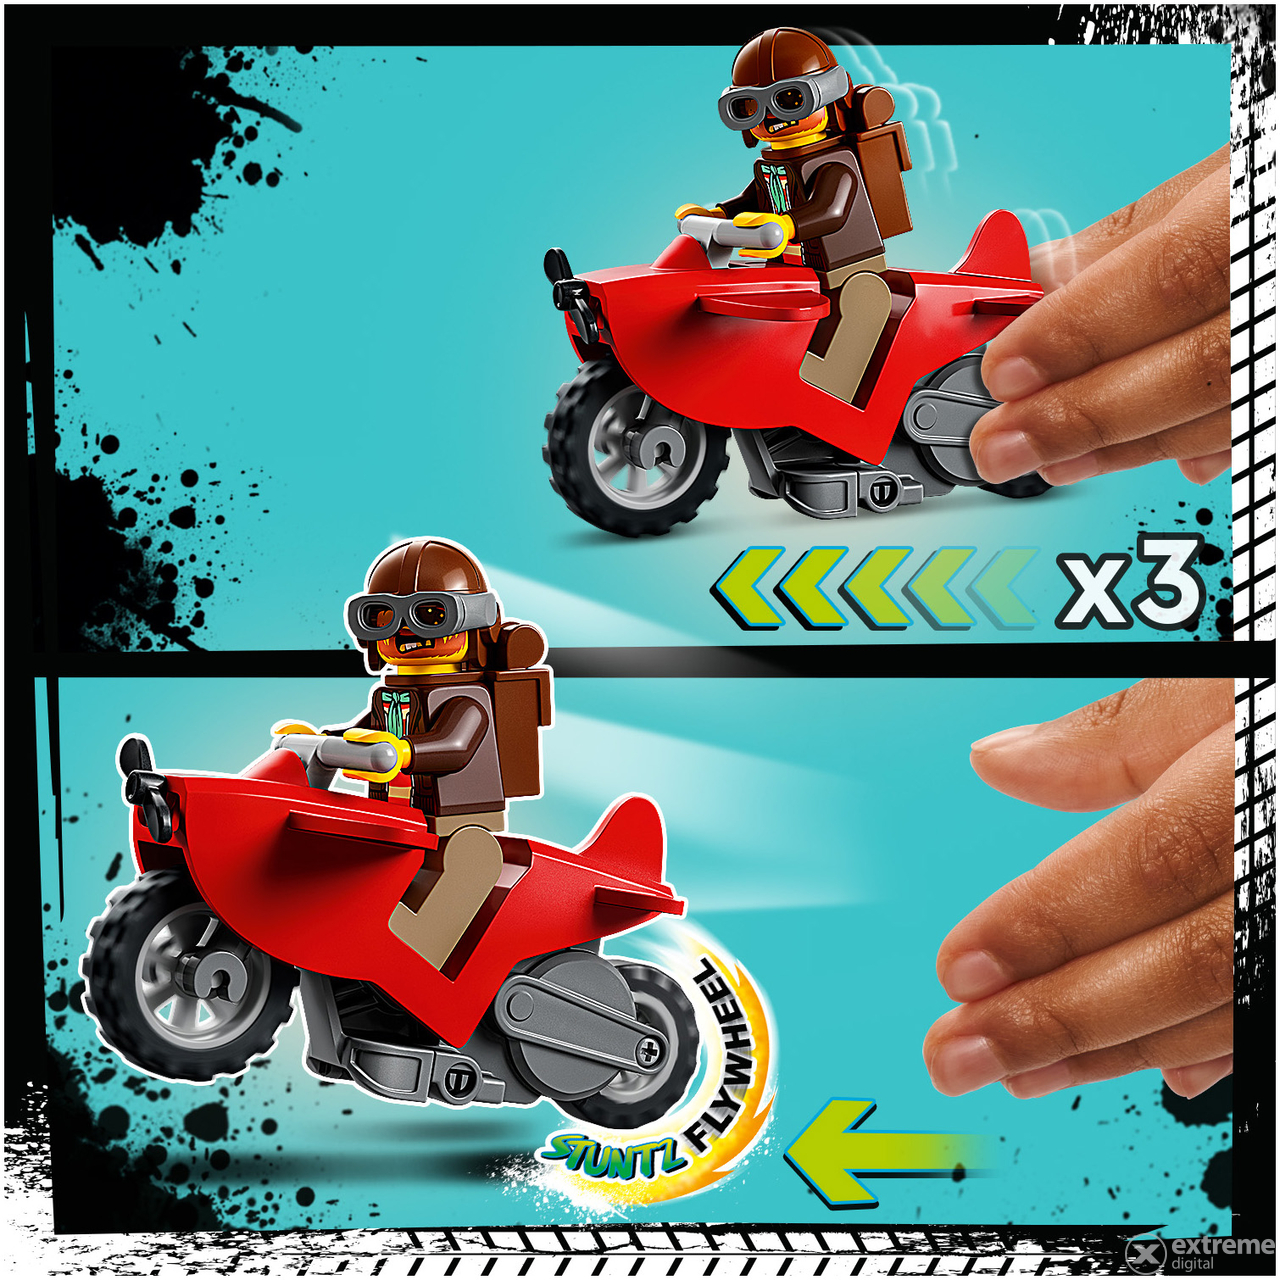 LEGO® City Stuntz 60342 Haiangriff-Stuntchallenge